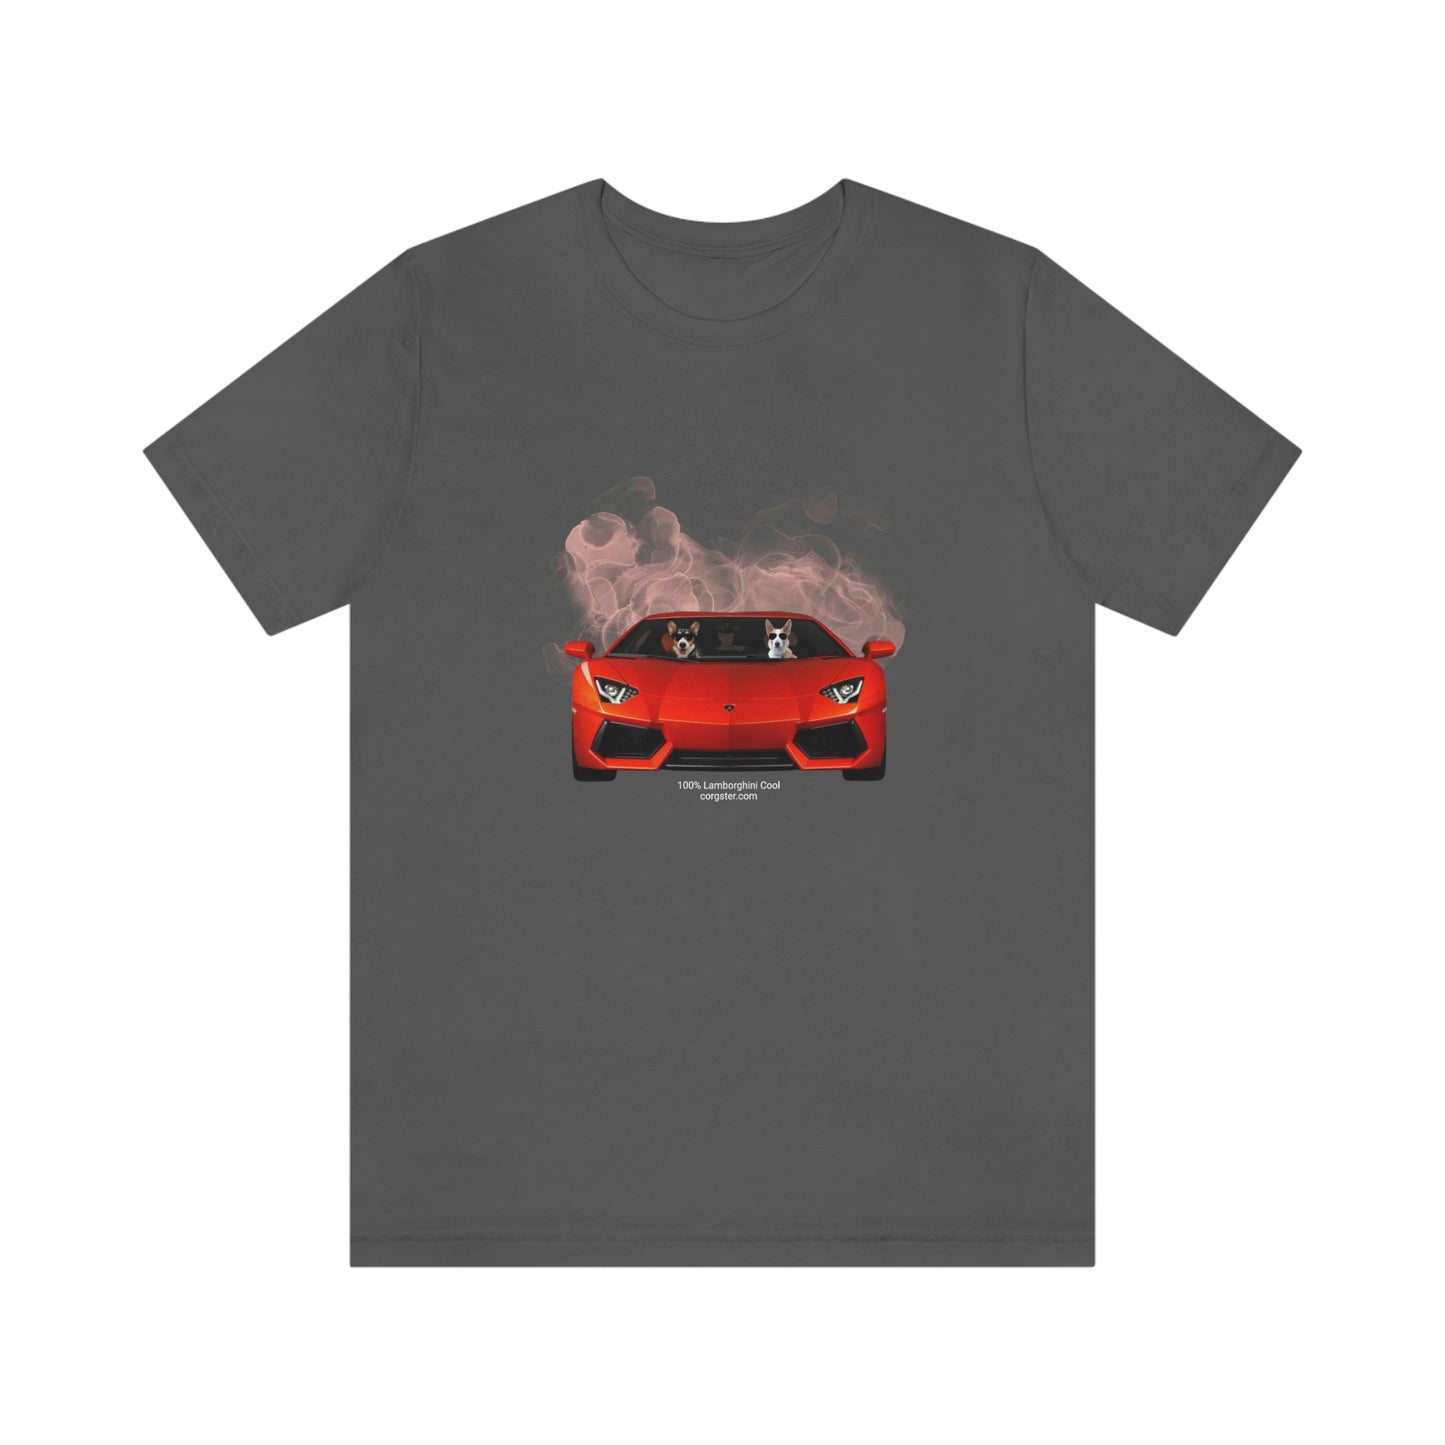 Red Lamborghini Corgis - corgster.com